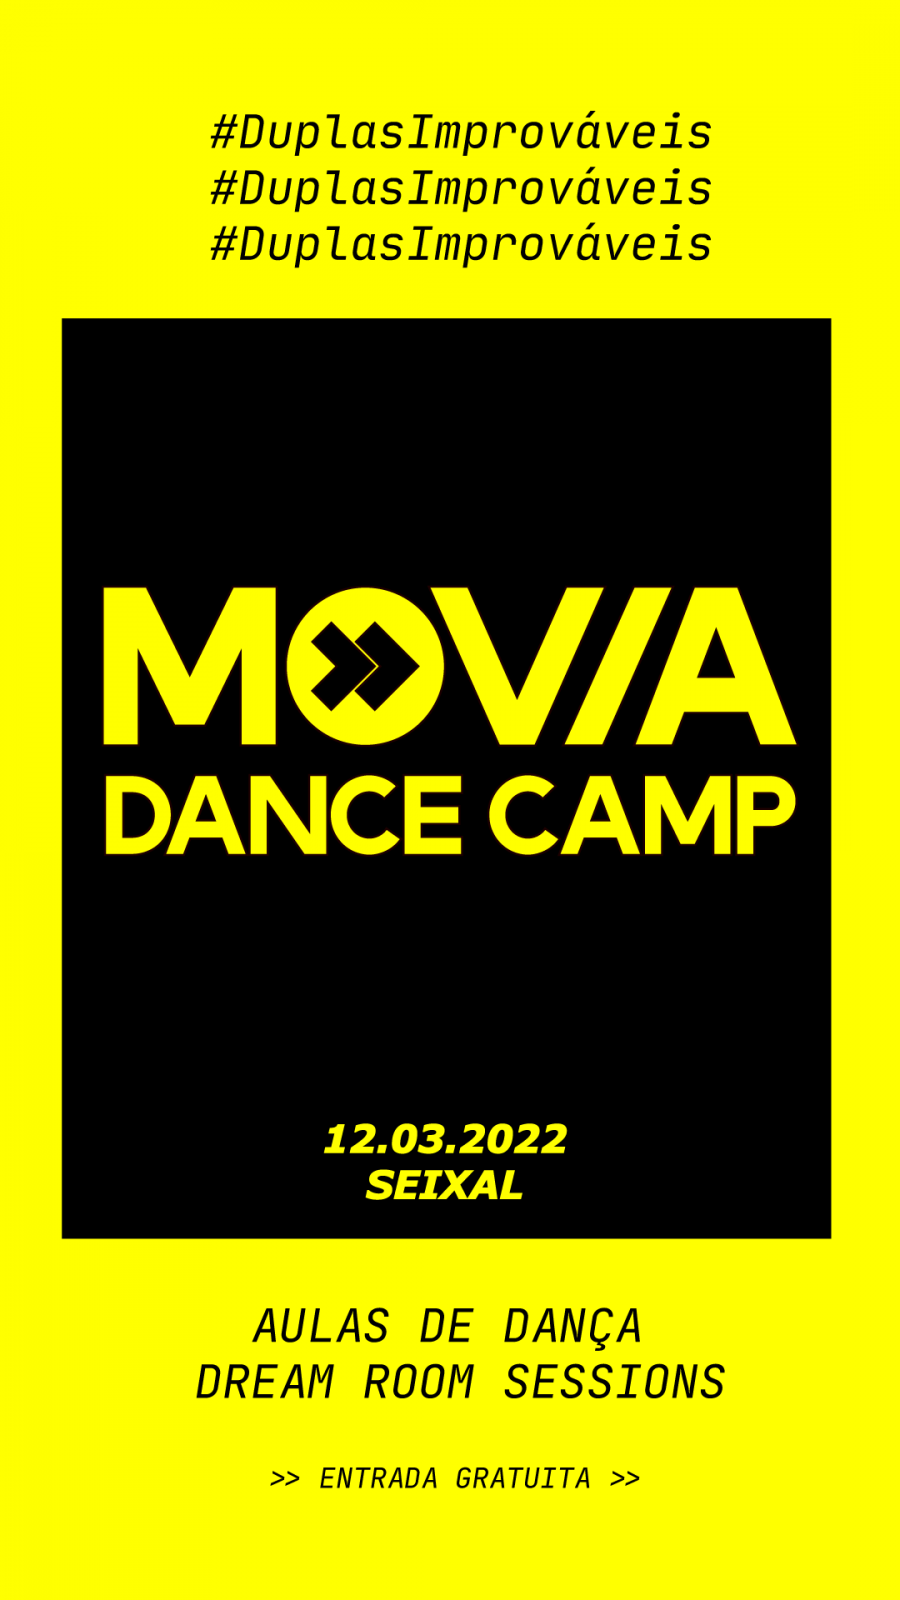 MOVIA DANCE CAMP #DuplasImprováveis